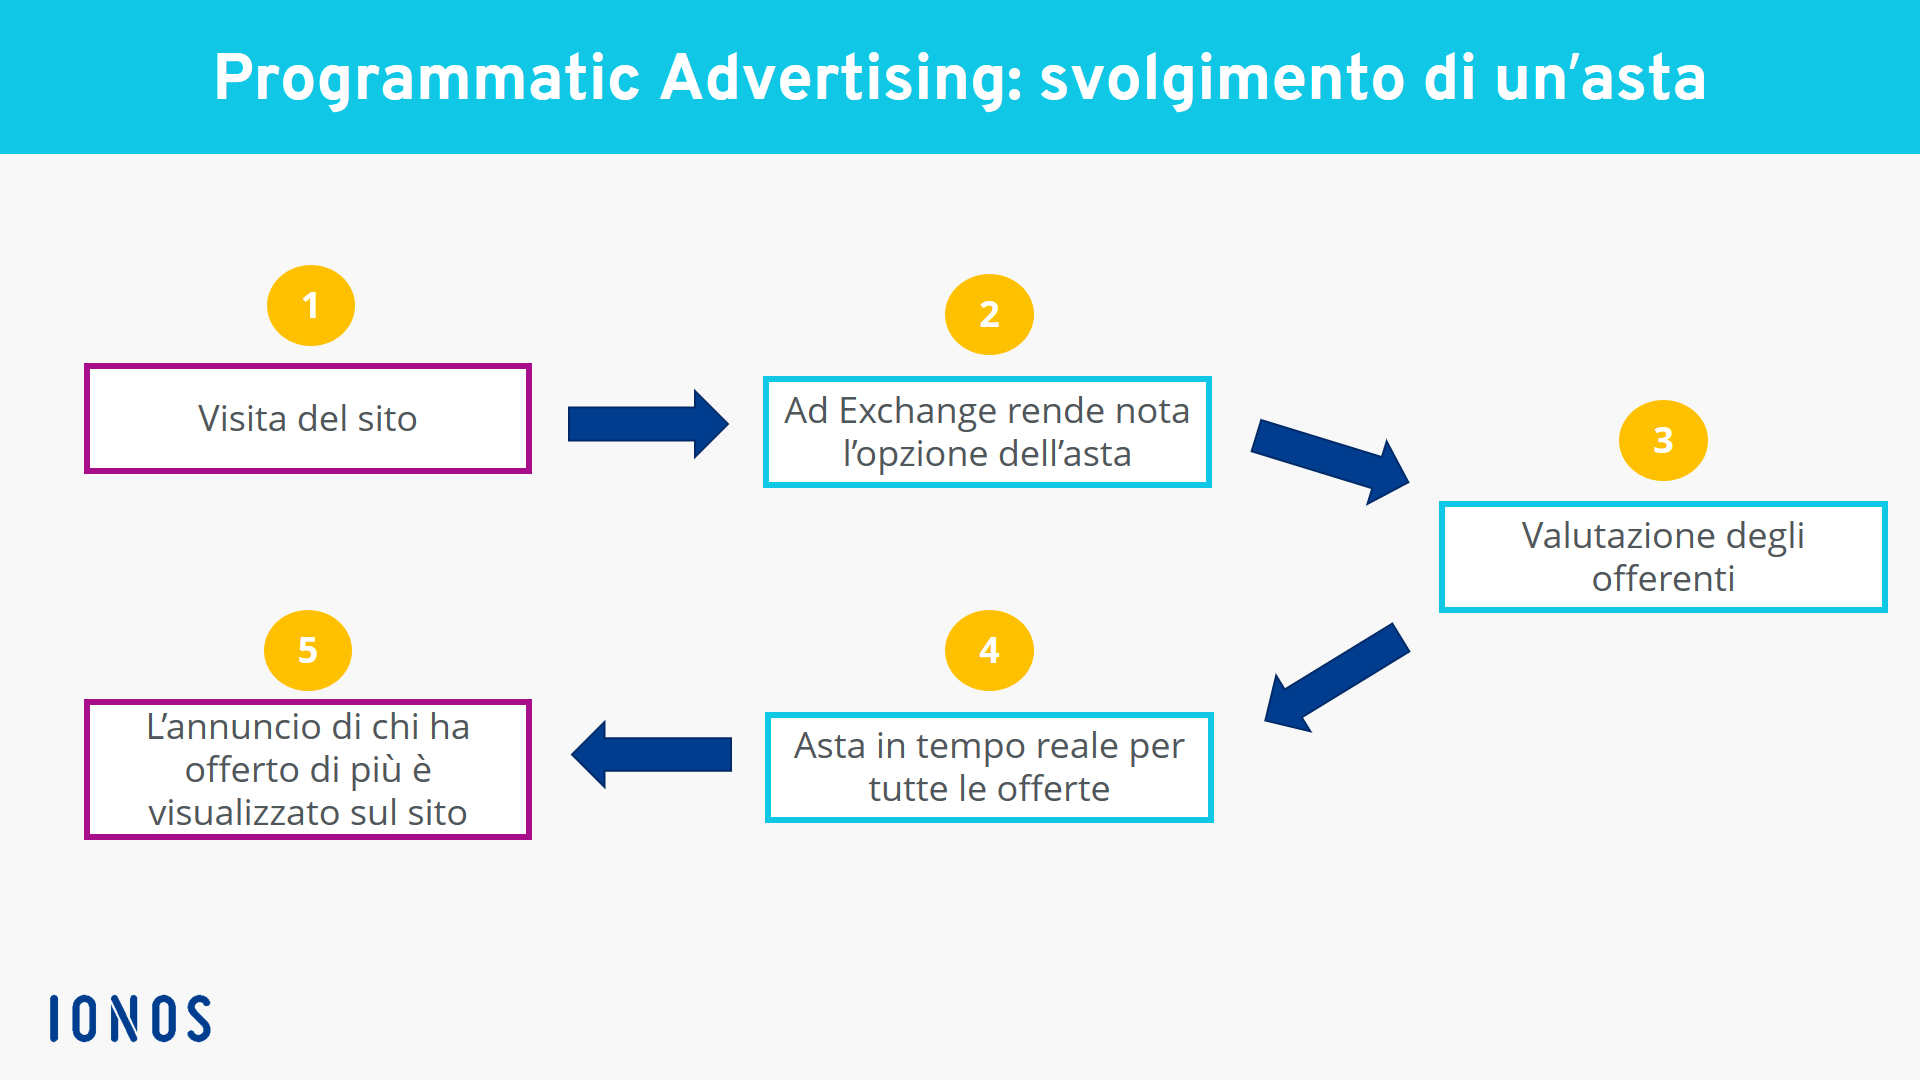 Procedimento del processo di asta nel programmatic advertising